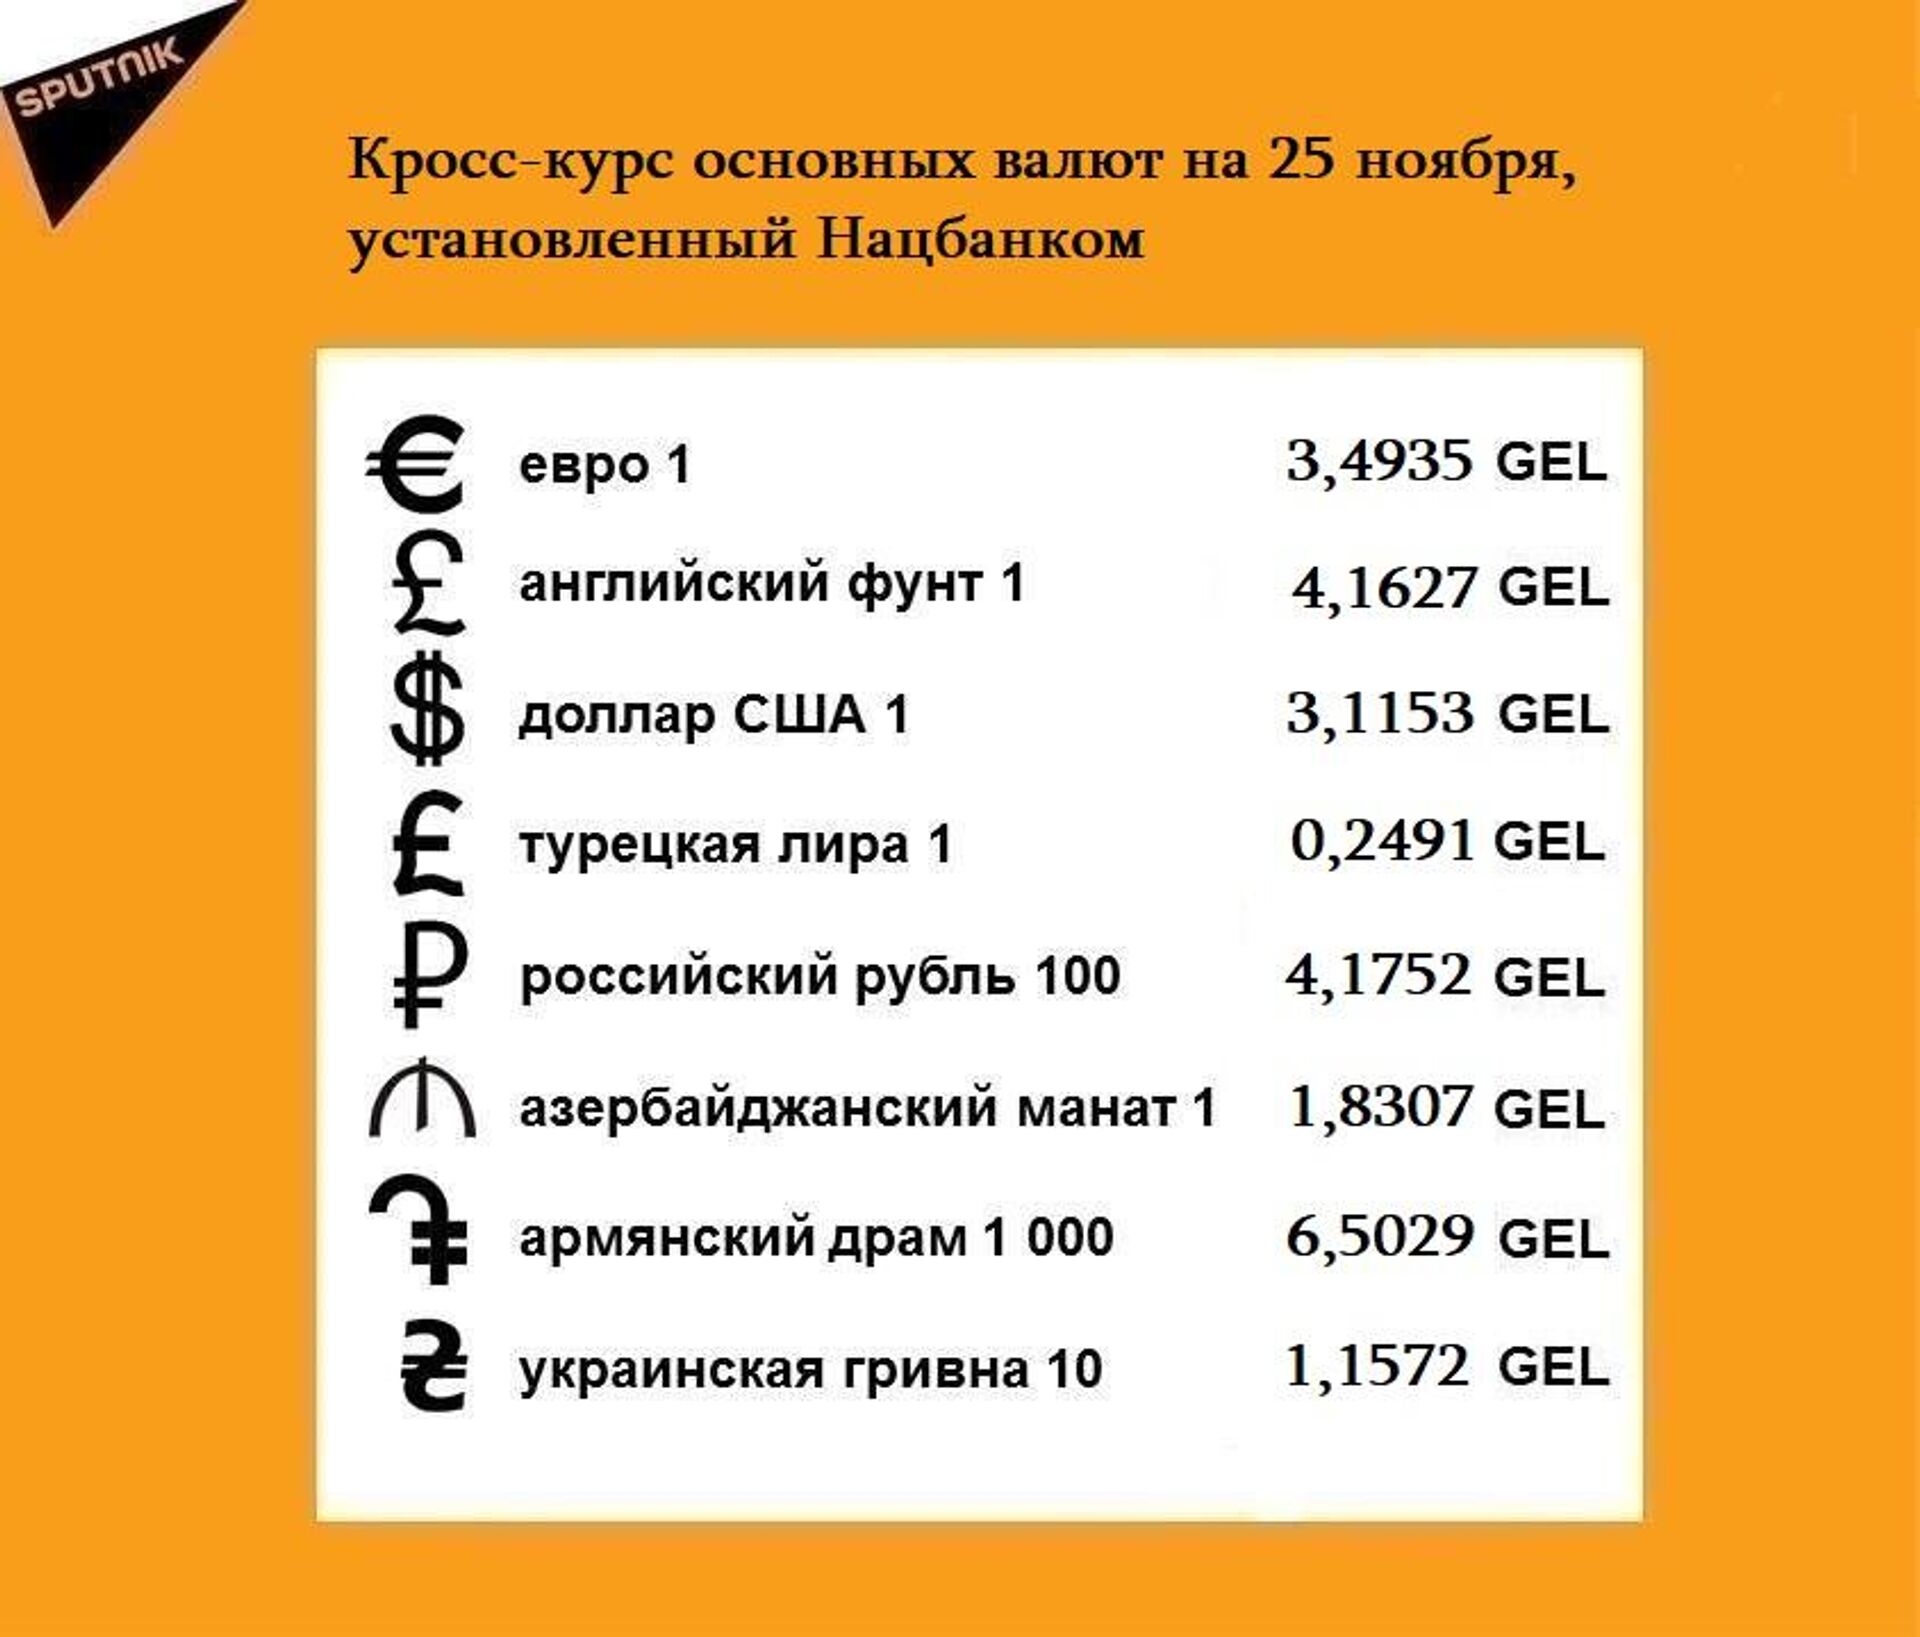 Кросс-курс основных валют на 25 ноября - Sputnik Грузия, 1920, 25.11.2021